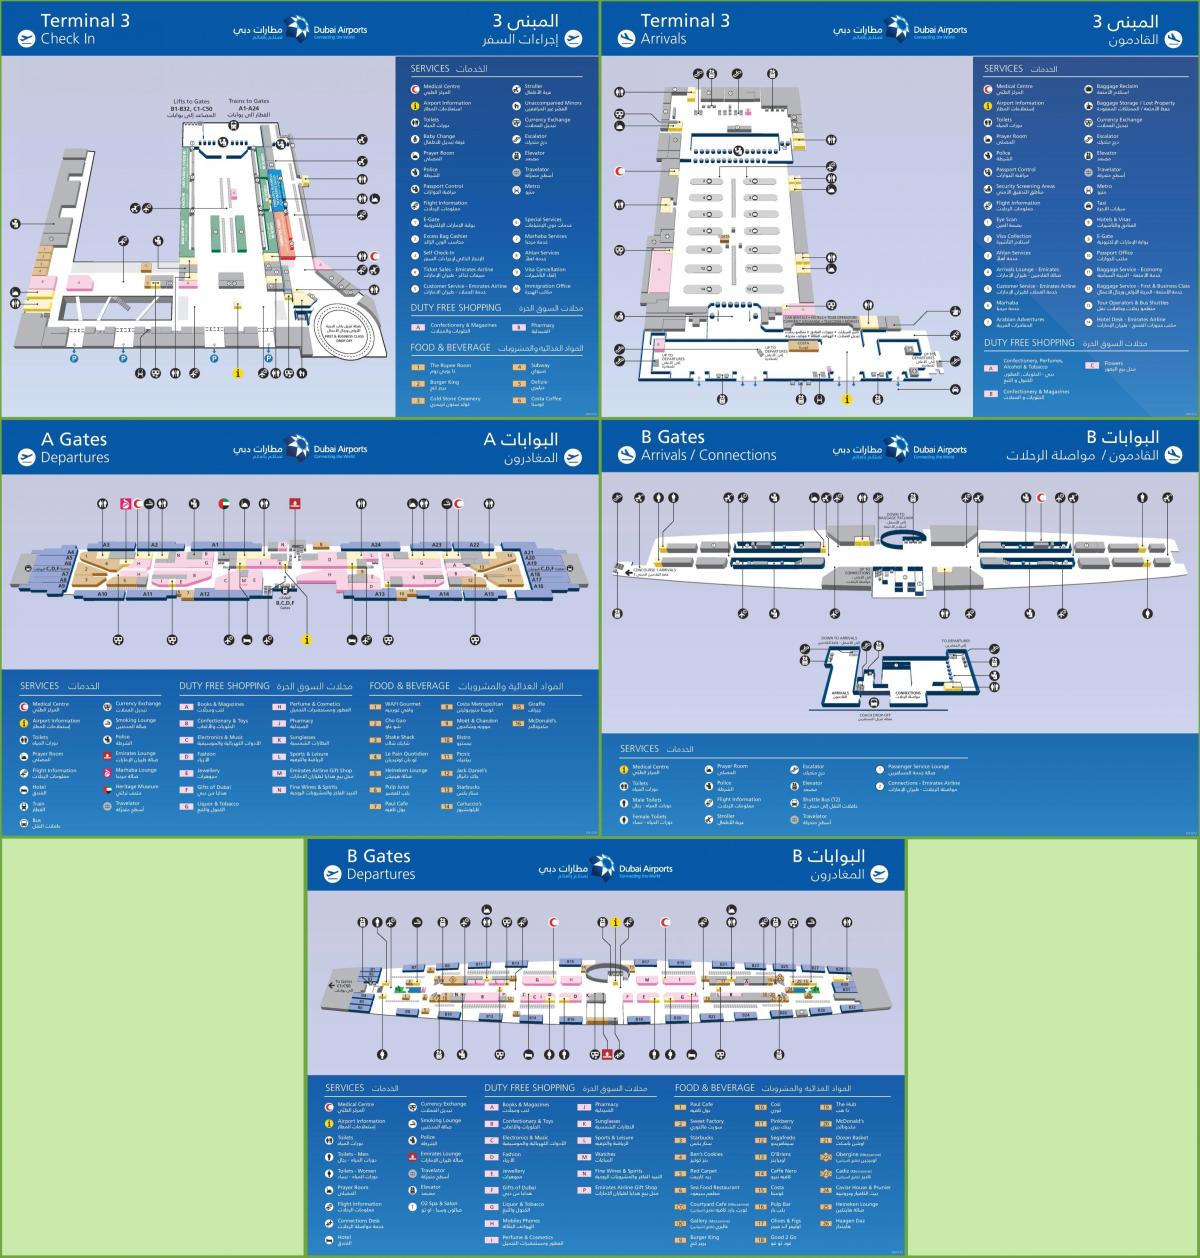 термінал 3 аеропорту Дубая карті